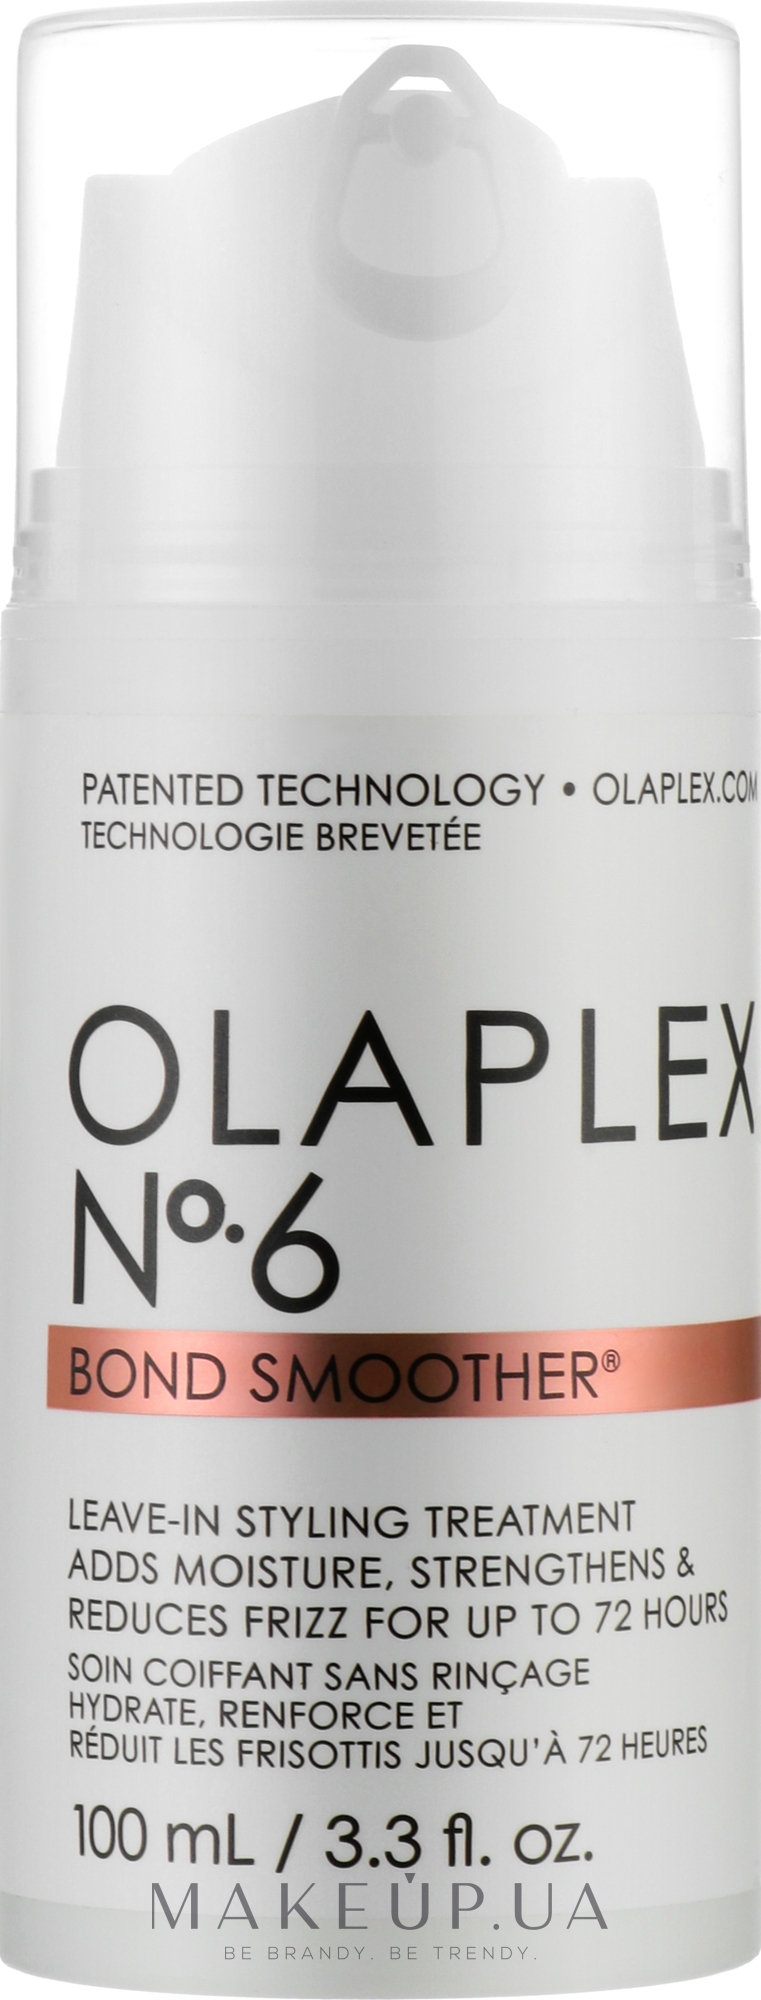 Восстанавливающий крем для укладки волос (с помпой) - Olaplex Bond Smoother Reparative Styling Creme No. 6 — фото 100ml